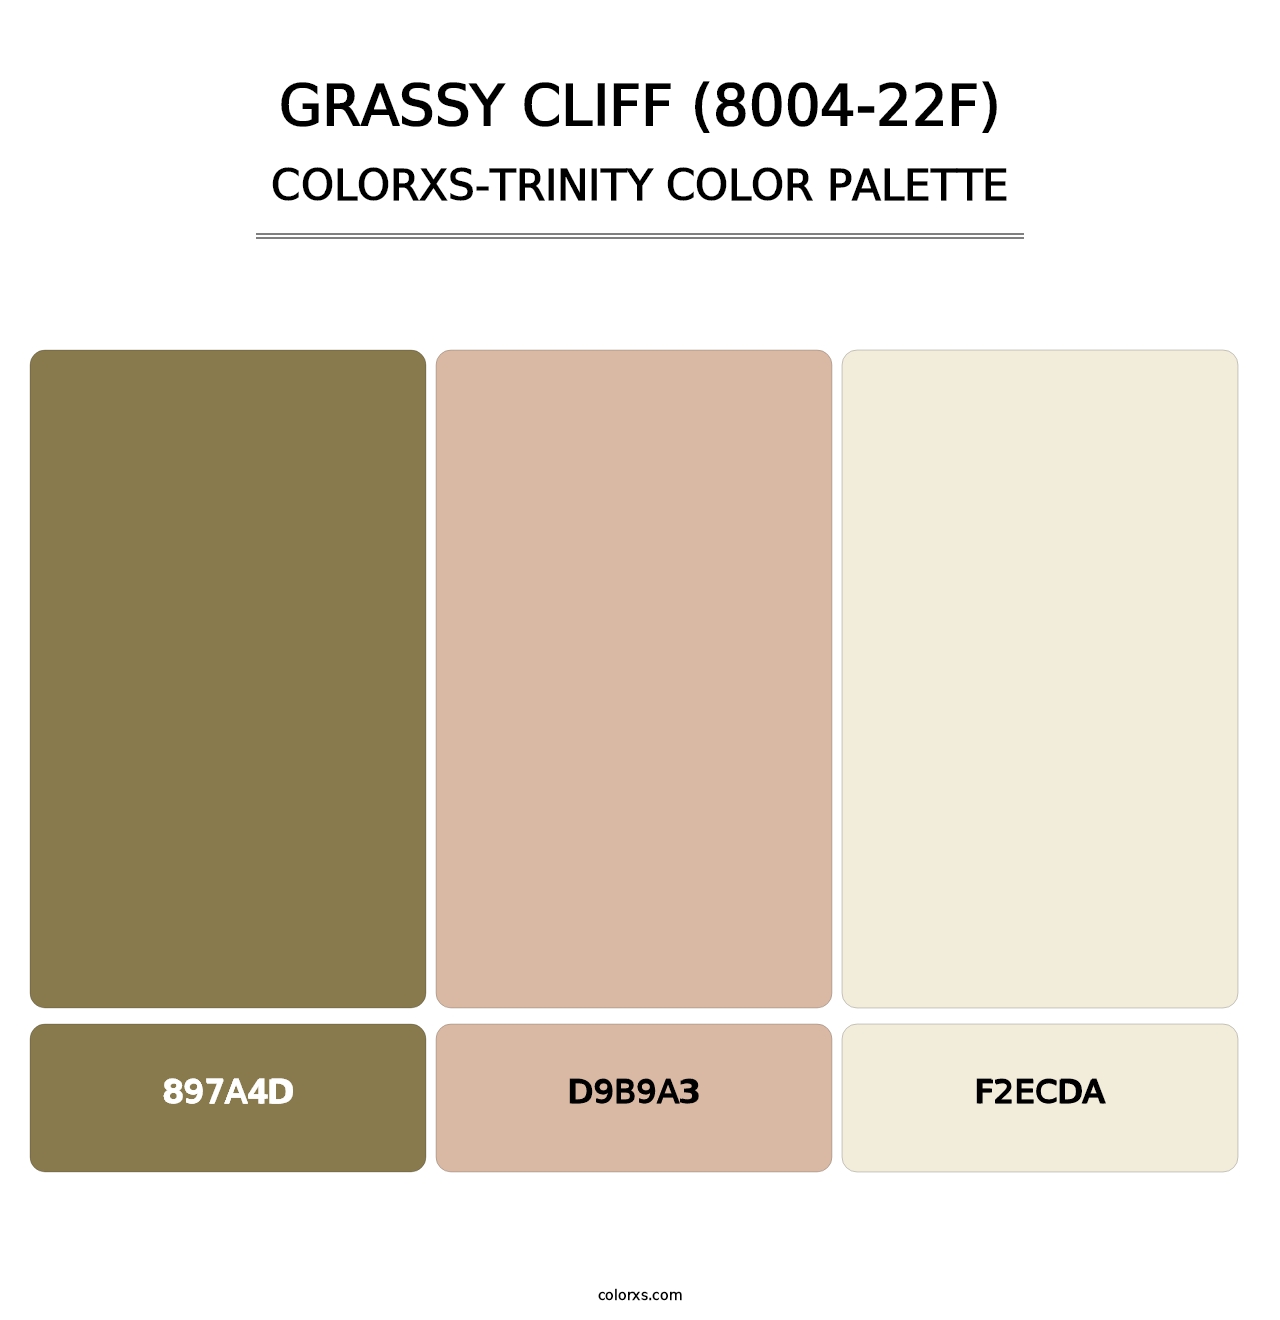 Grassy Cliff (8004-22F) - Colorxs Trinity Palette